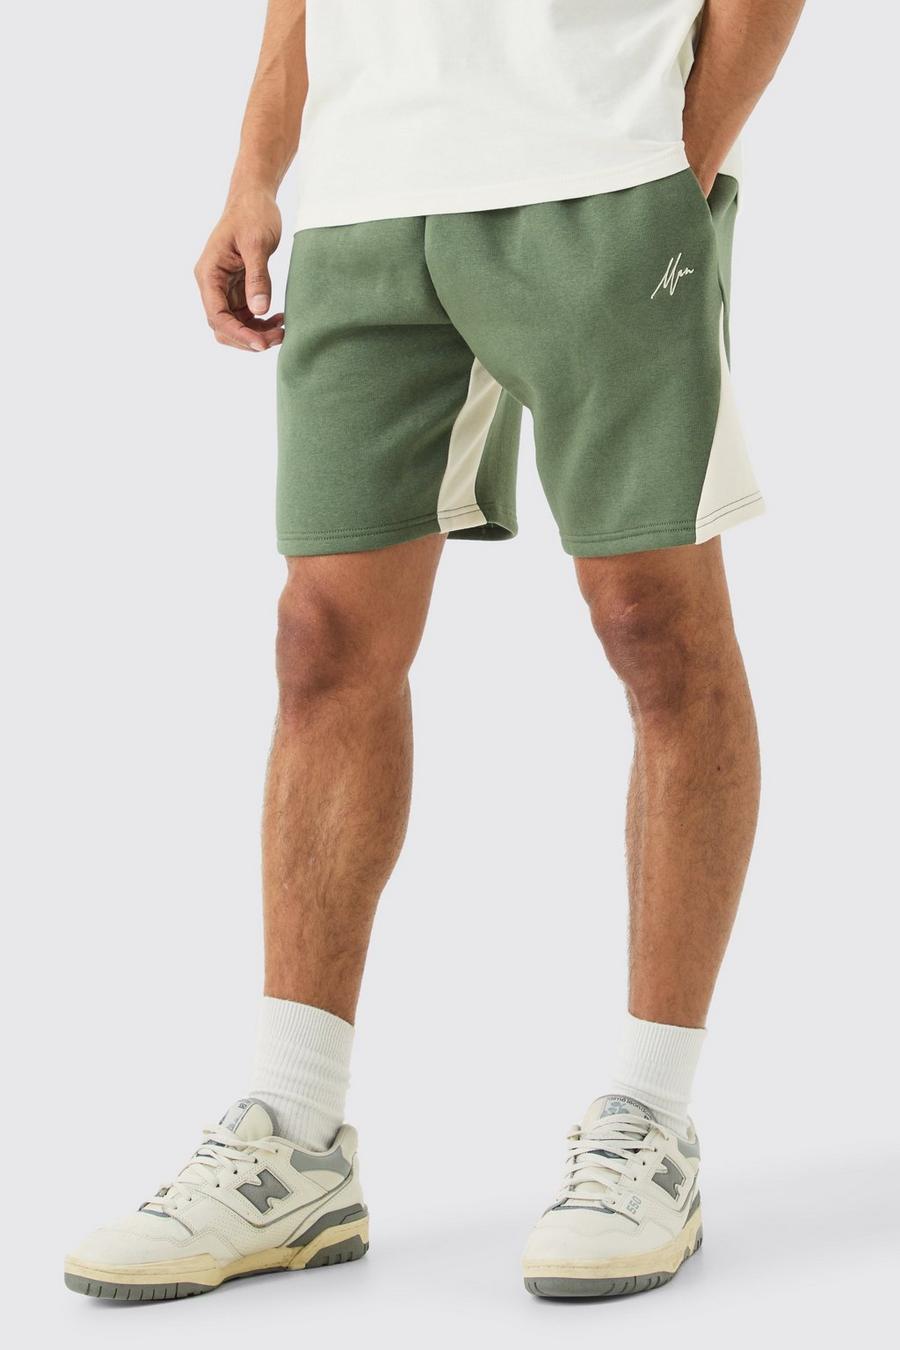 Lockere Man-Shorts, Khaki